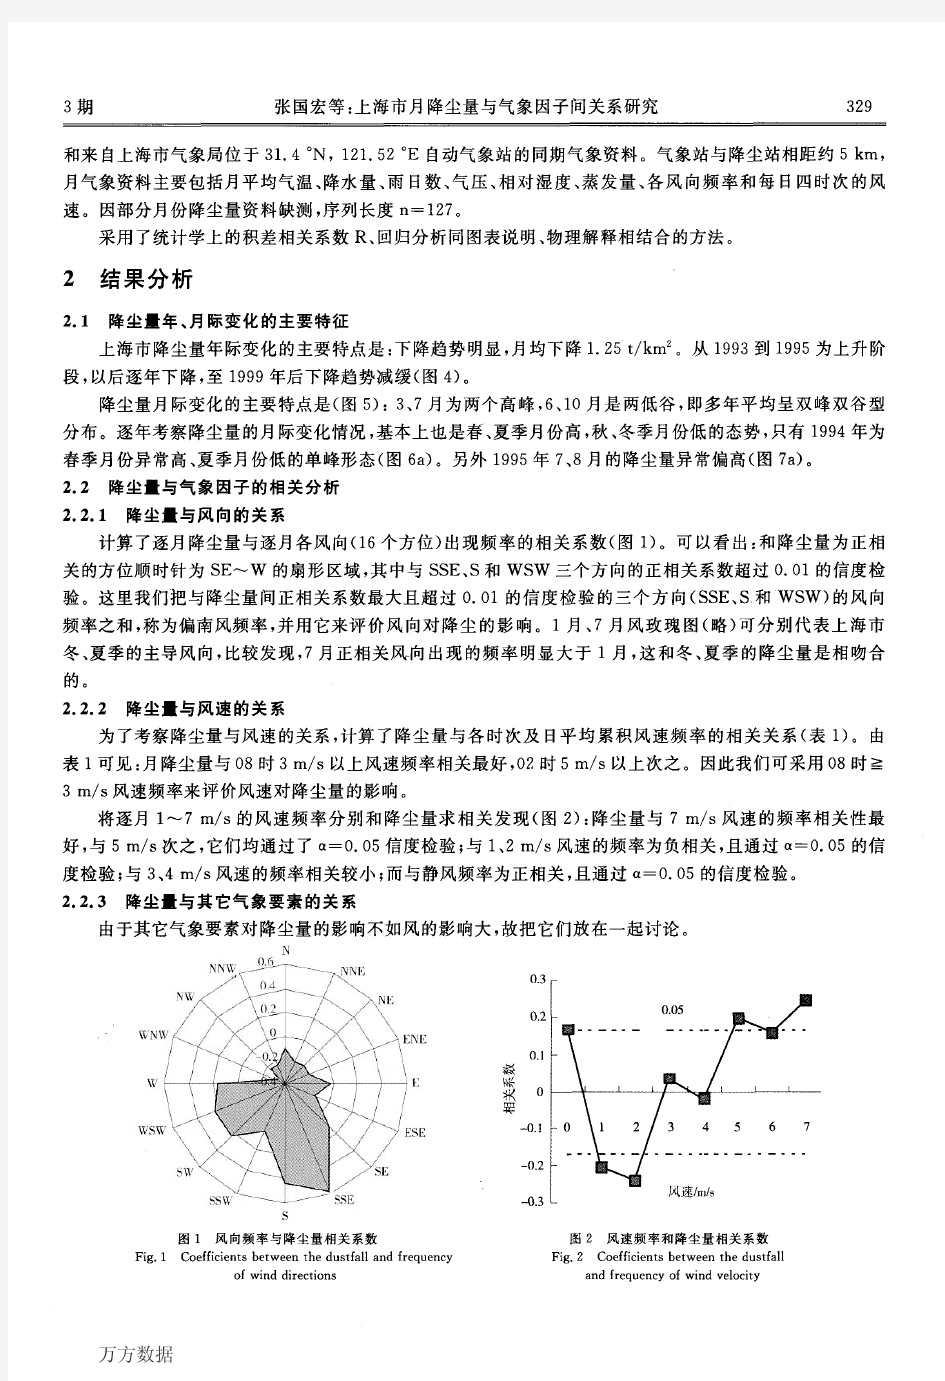 上海市月降尘量与气象因子间关系研究